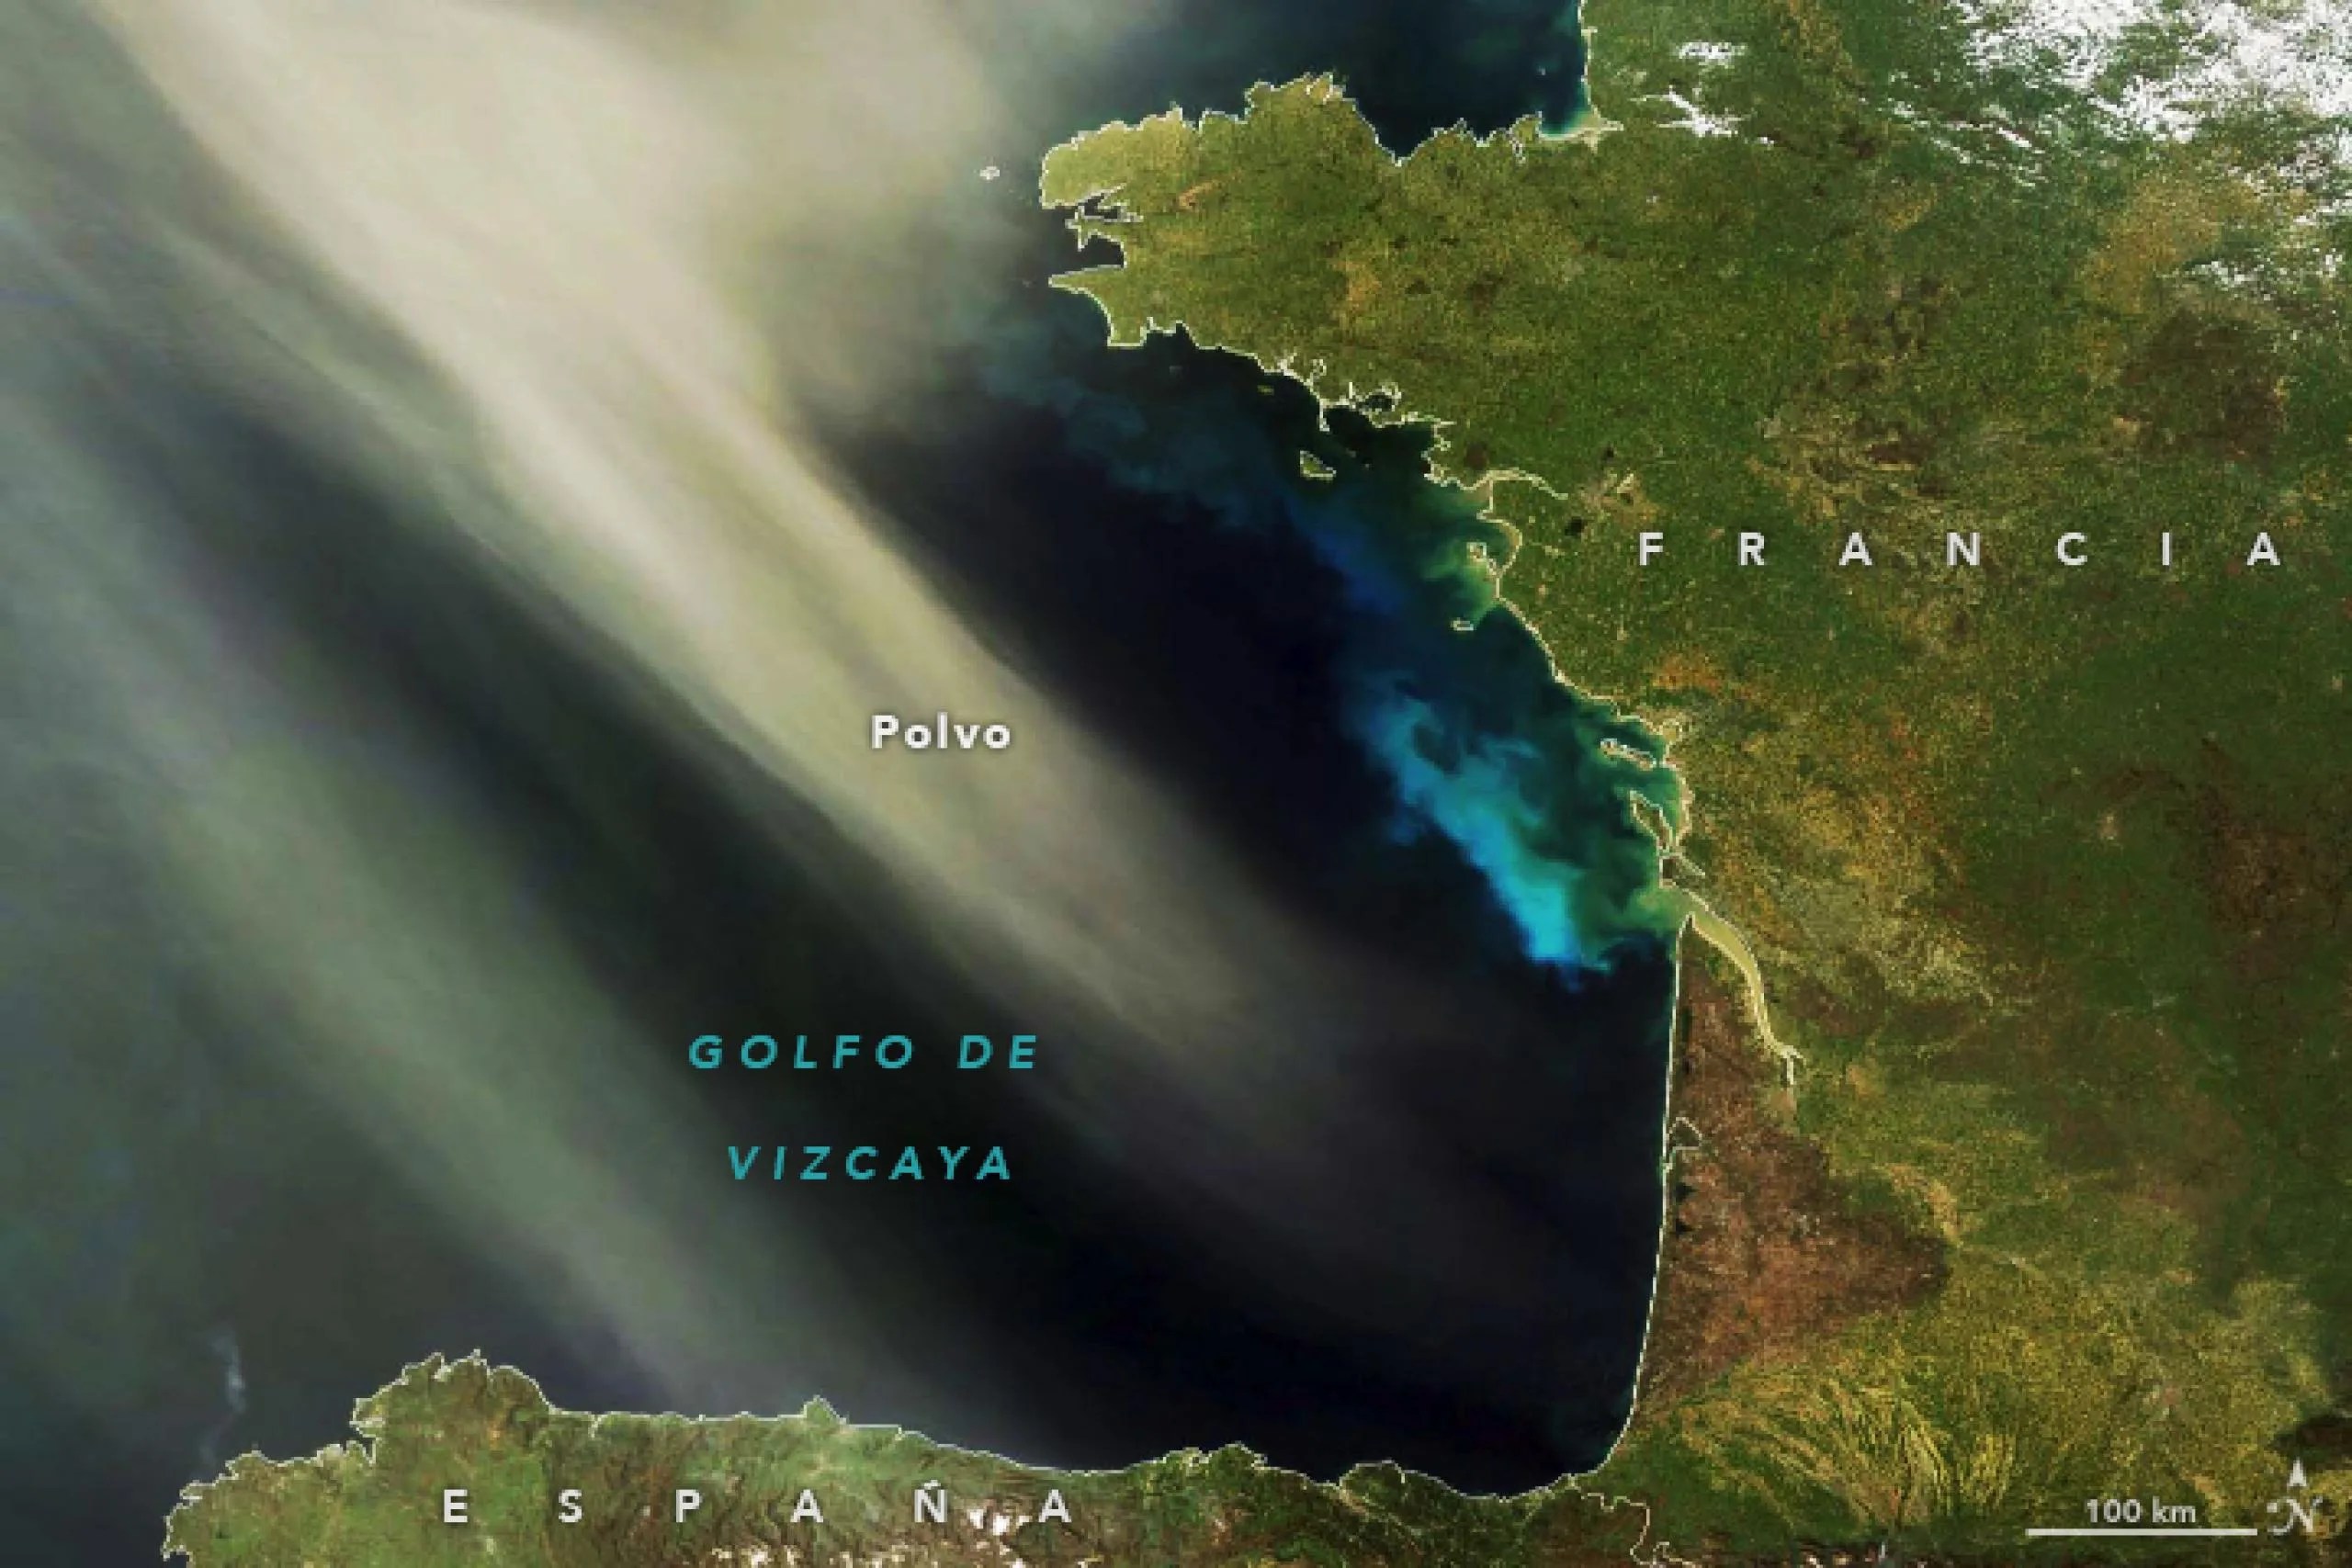 Esta imagen, adquirida el 8 de abril de 2011 con el instrumento Espectrorradiómetro de imágenes de resolución moderada (MODIS) a bordo del satélite Terra de la NASA, muestra polvo sahariano sobre el golfo de Vizcaya. Una proliferación de fitoplancton hace que el agua se vea de brillantes colores verde y azul.